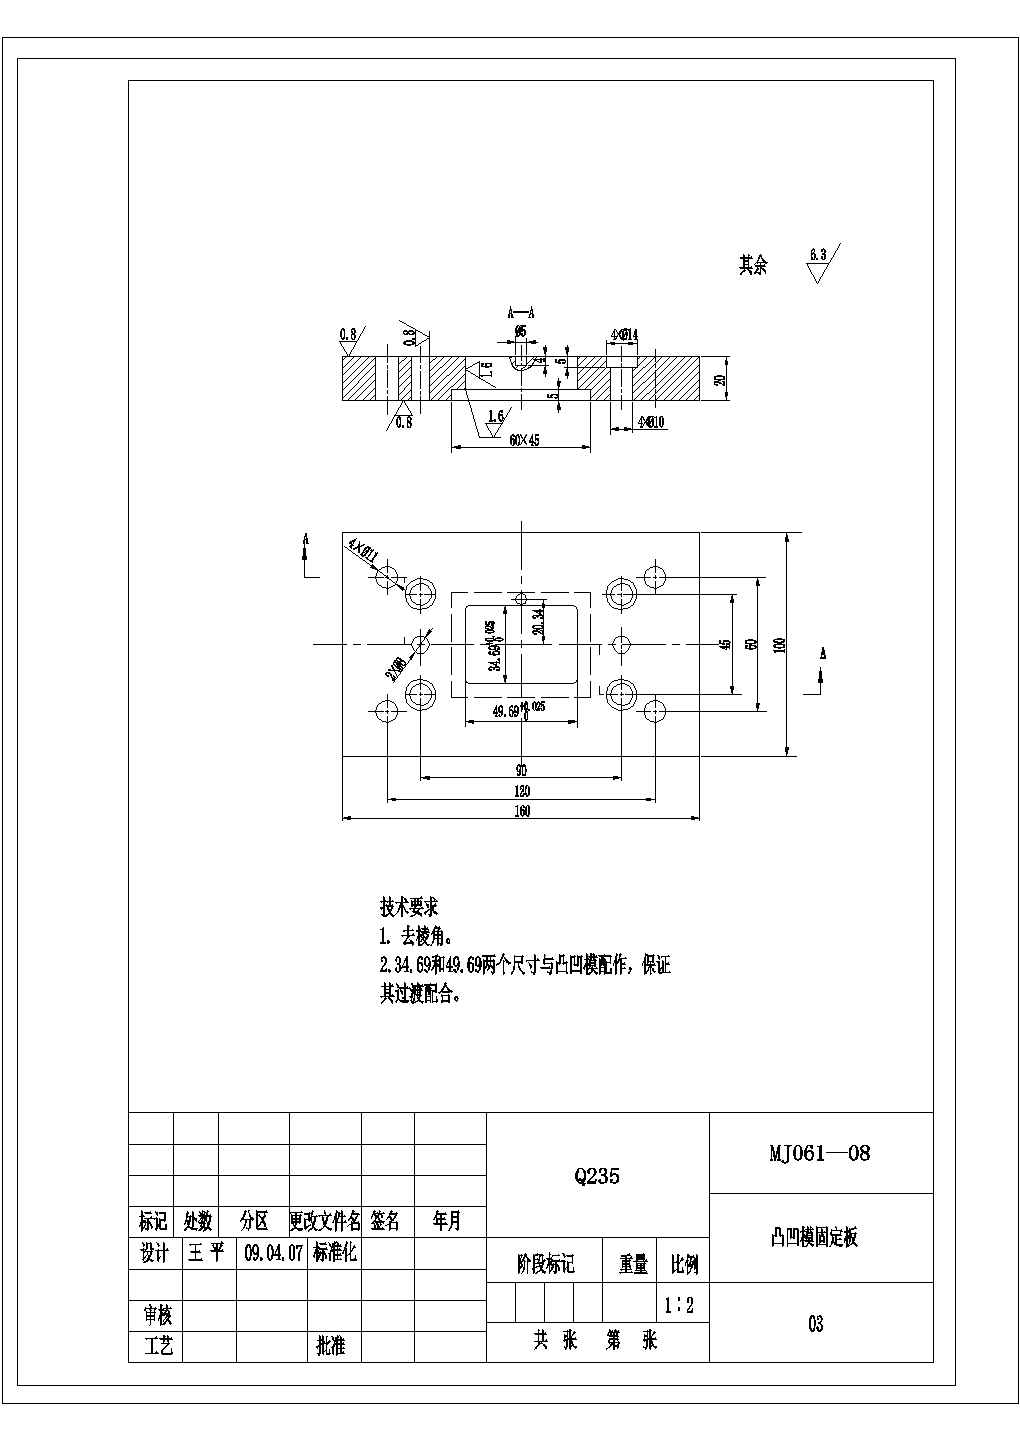 某安装板冲压成形工艺及模具设计凸凹模固定板CAD节点全套图